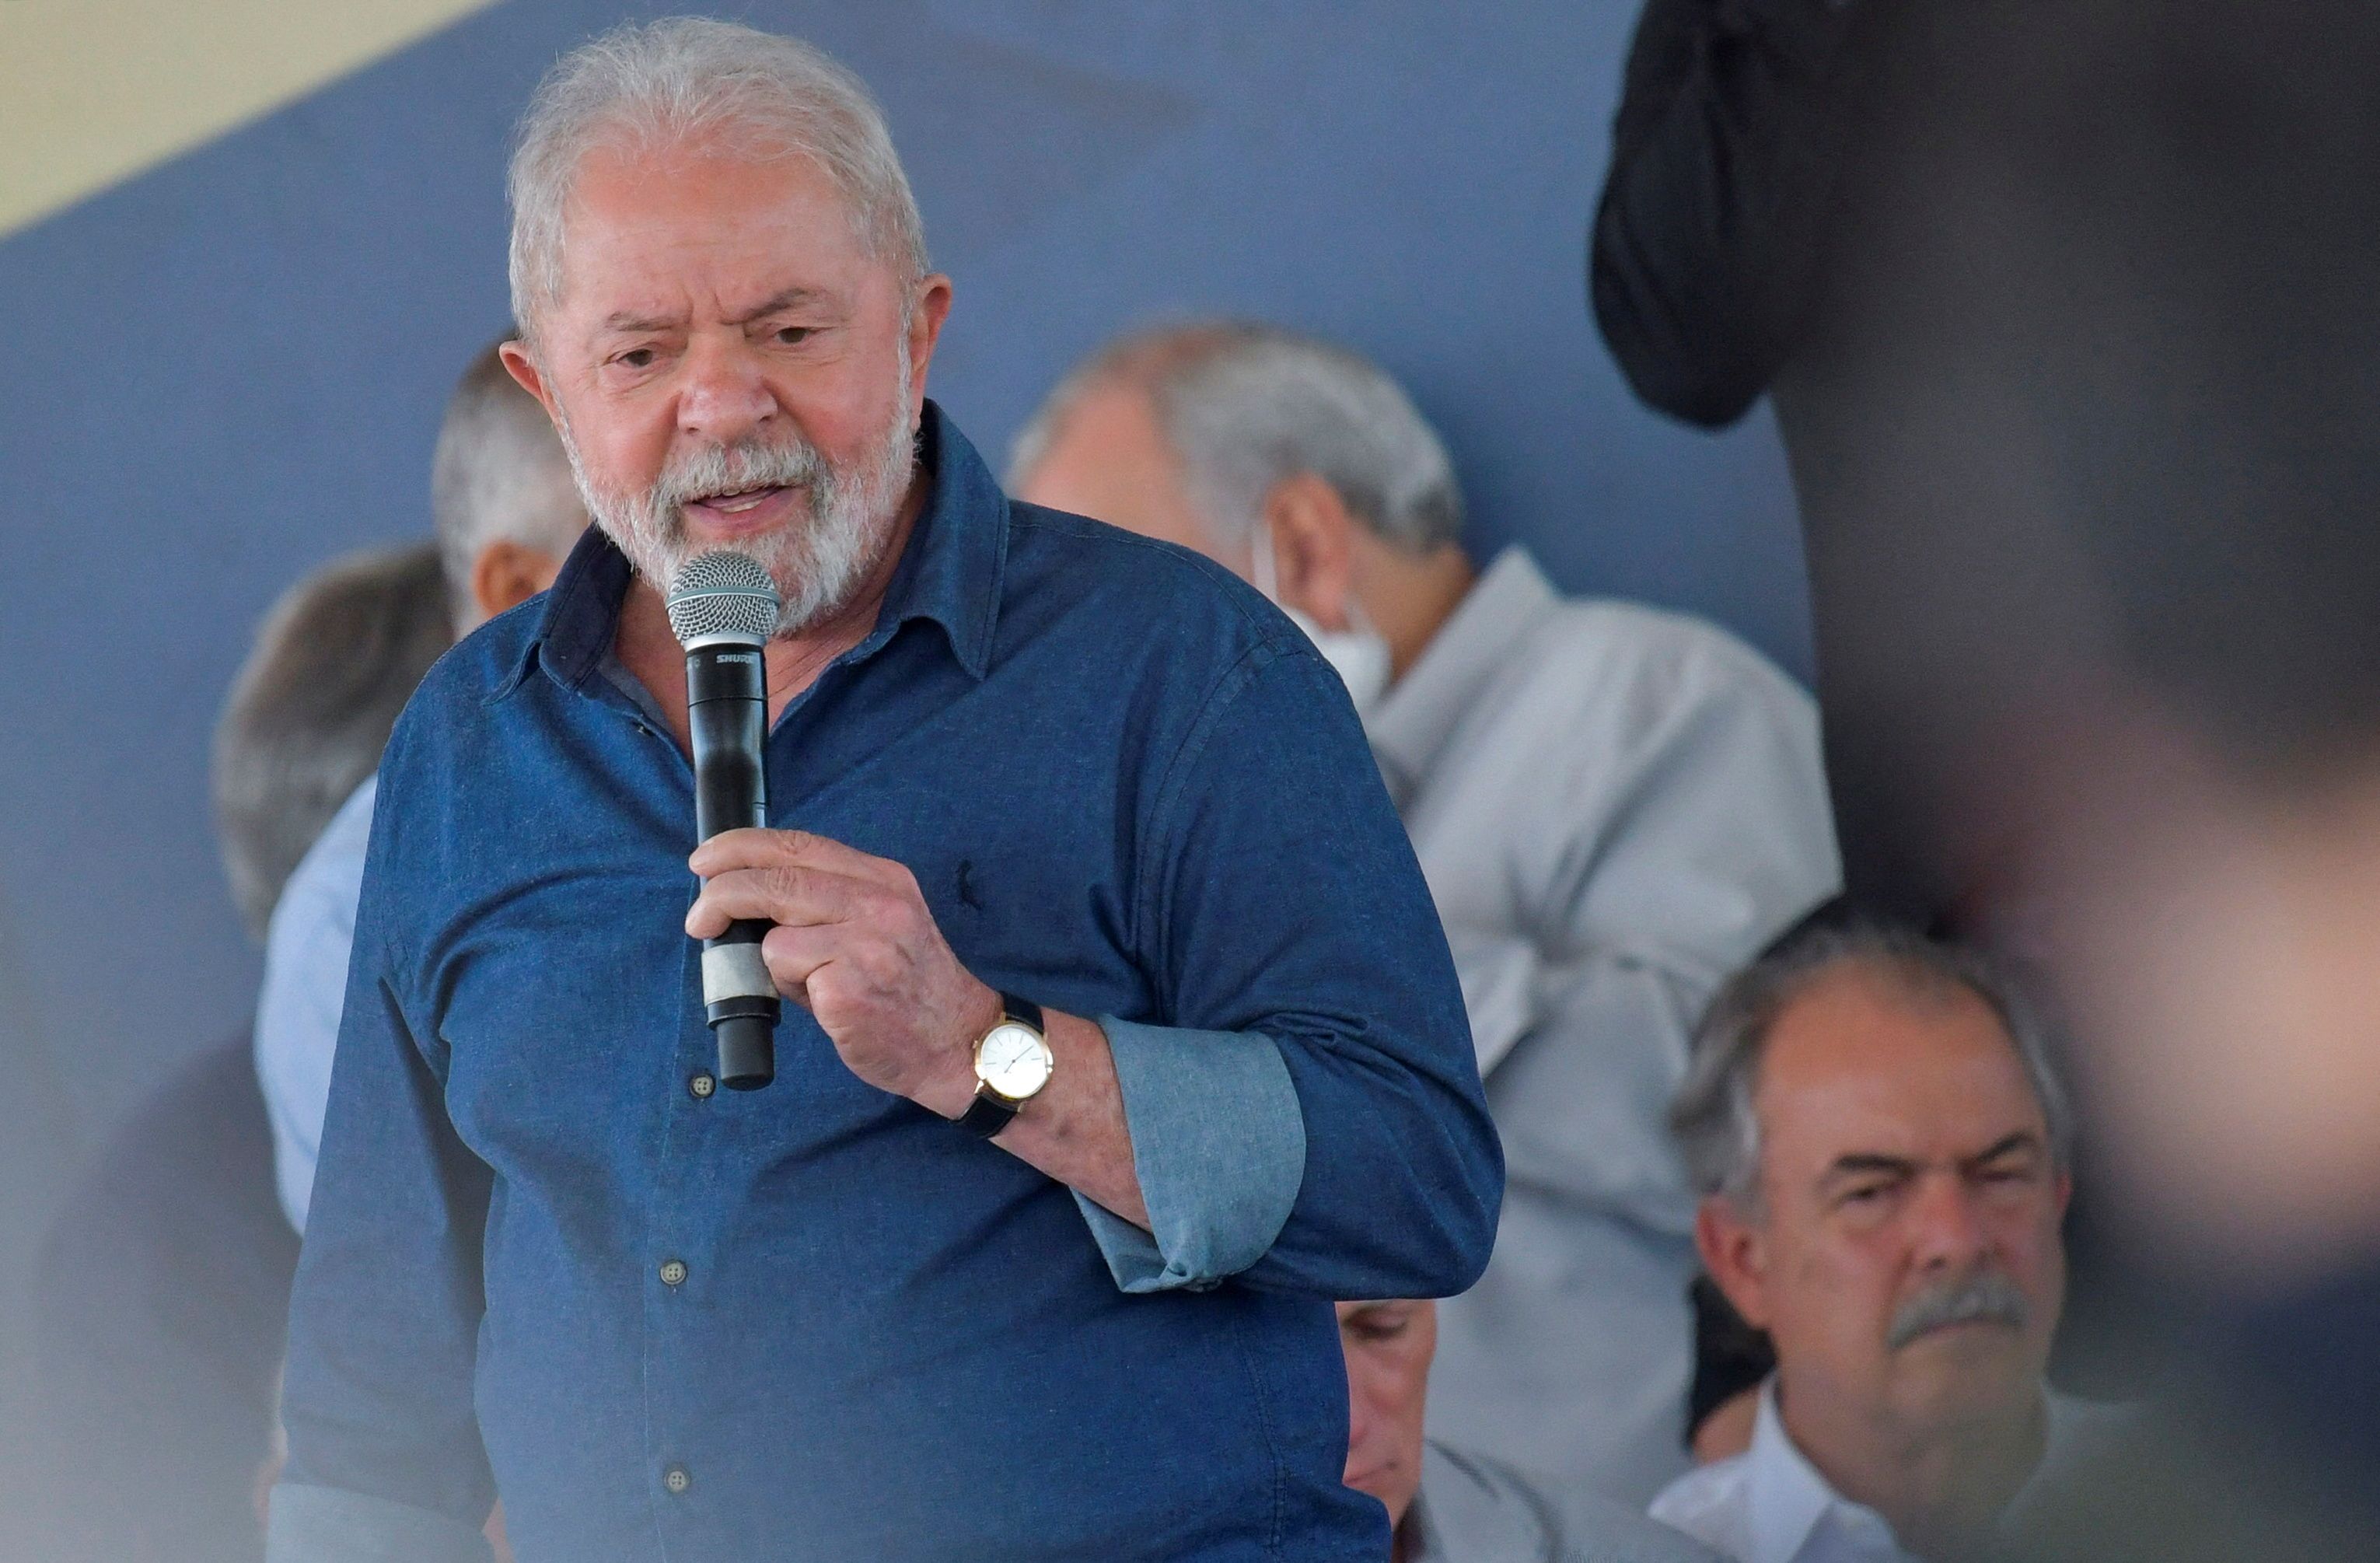 Se eleito, Lula extinguirá Auxílio Brasil e pagará Bolsa Família no valor de R$ 100,00